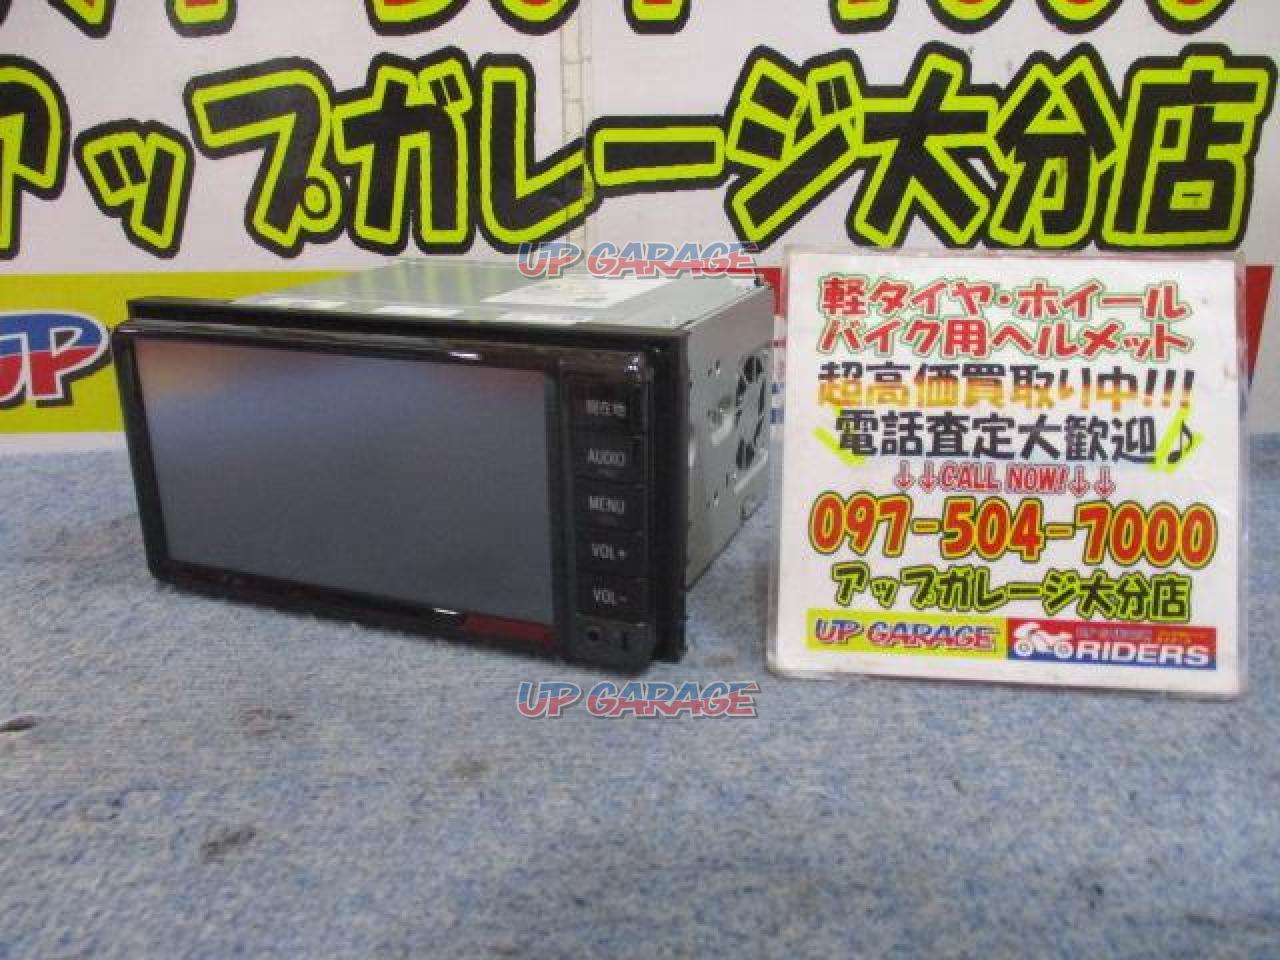 トヨタ純正 NSCD-W66 200mmワイド/CD/ワンセグ/SD/メモリー